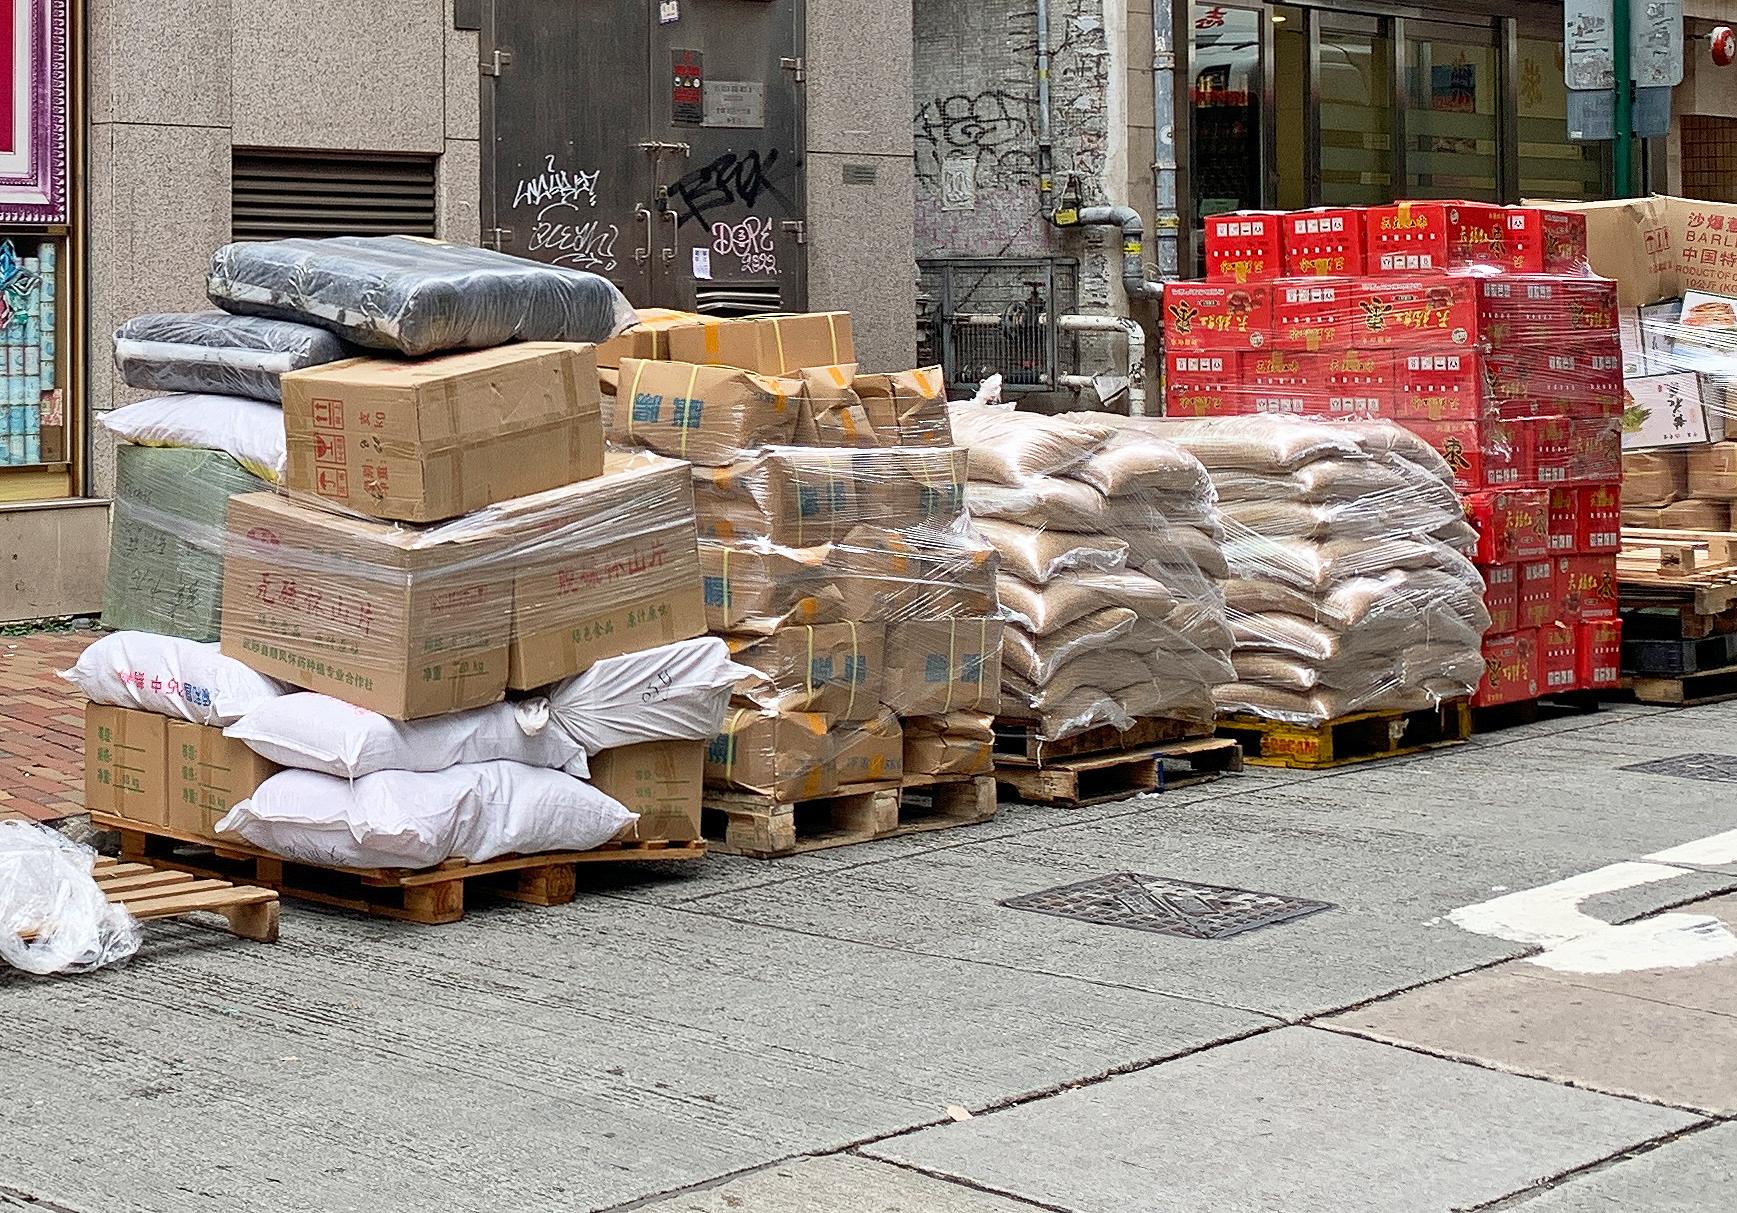 申诉专员赵慧贤今日（二月十六日）公布就政府对货物及杂物非法霸占或阻碍街道的规管的主动调查结果。